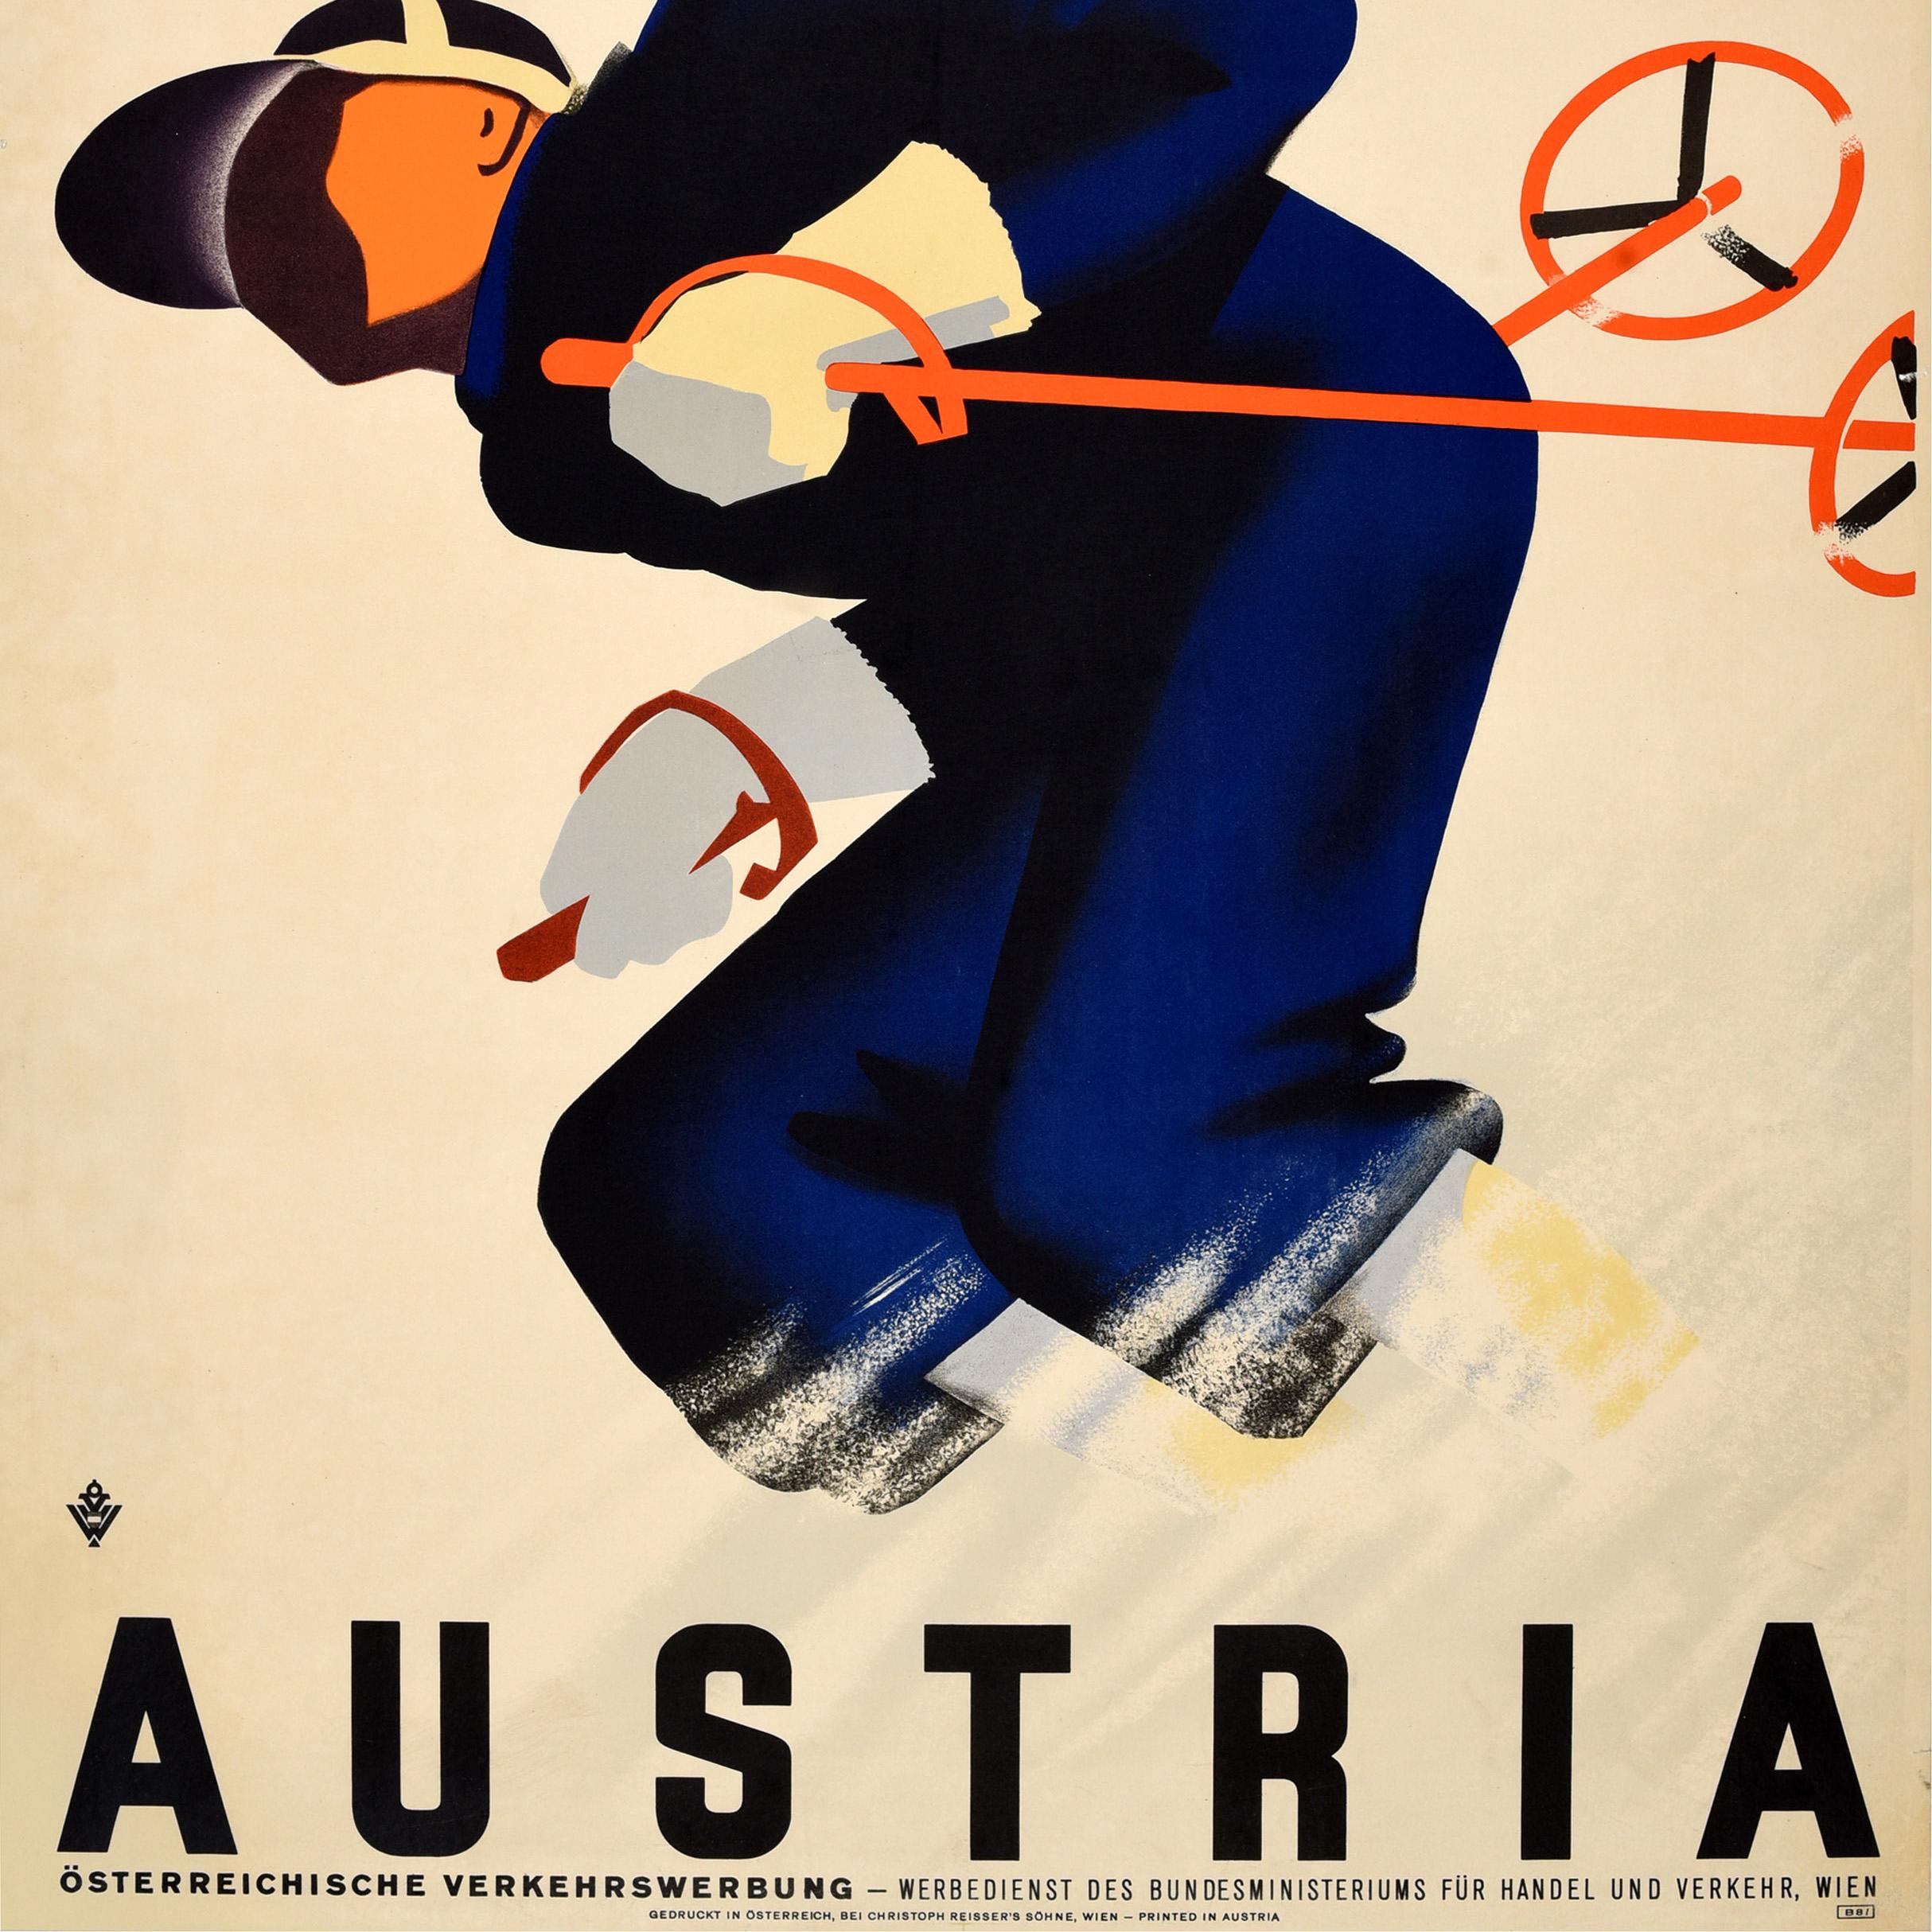 Original-Wintersport-Reiseplakat für Österreich mit einem dynamischen Art-déco-Design des bekannten österreichischen Künstlers und Plakatdesigners Paul Kirnig (1891-1959), das einen Skifahrer in Blau mit blauem Schal und weißen Handschuhen zeigt,